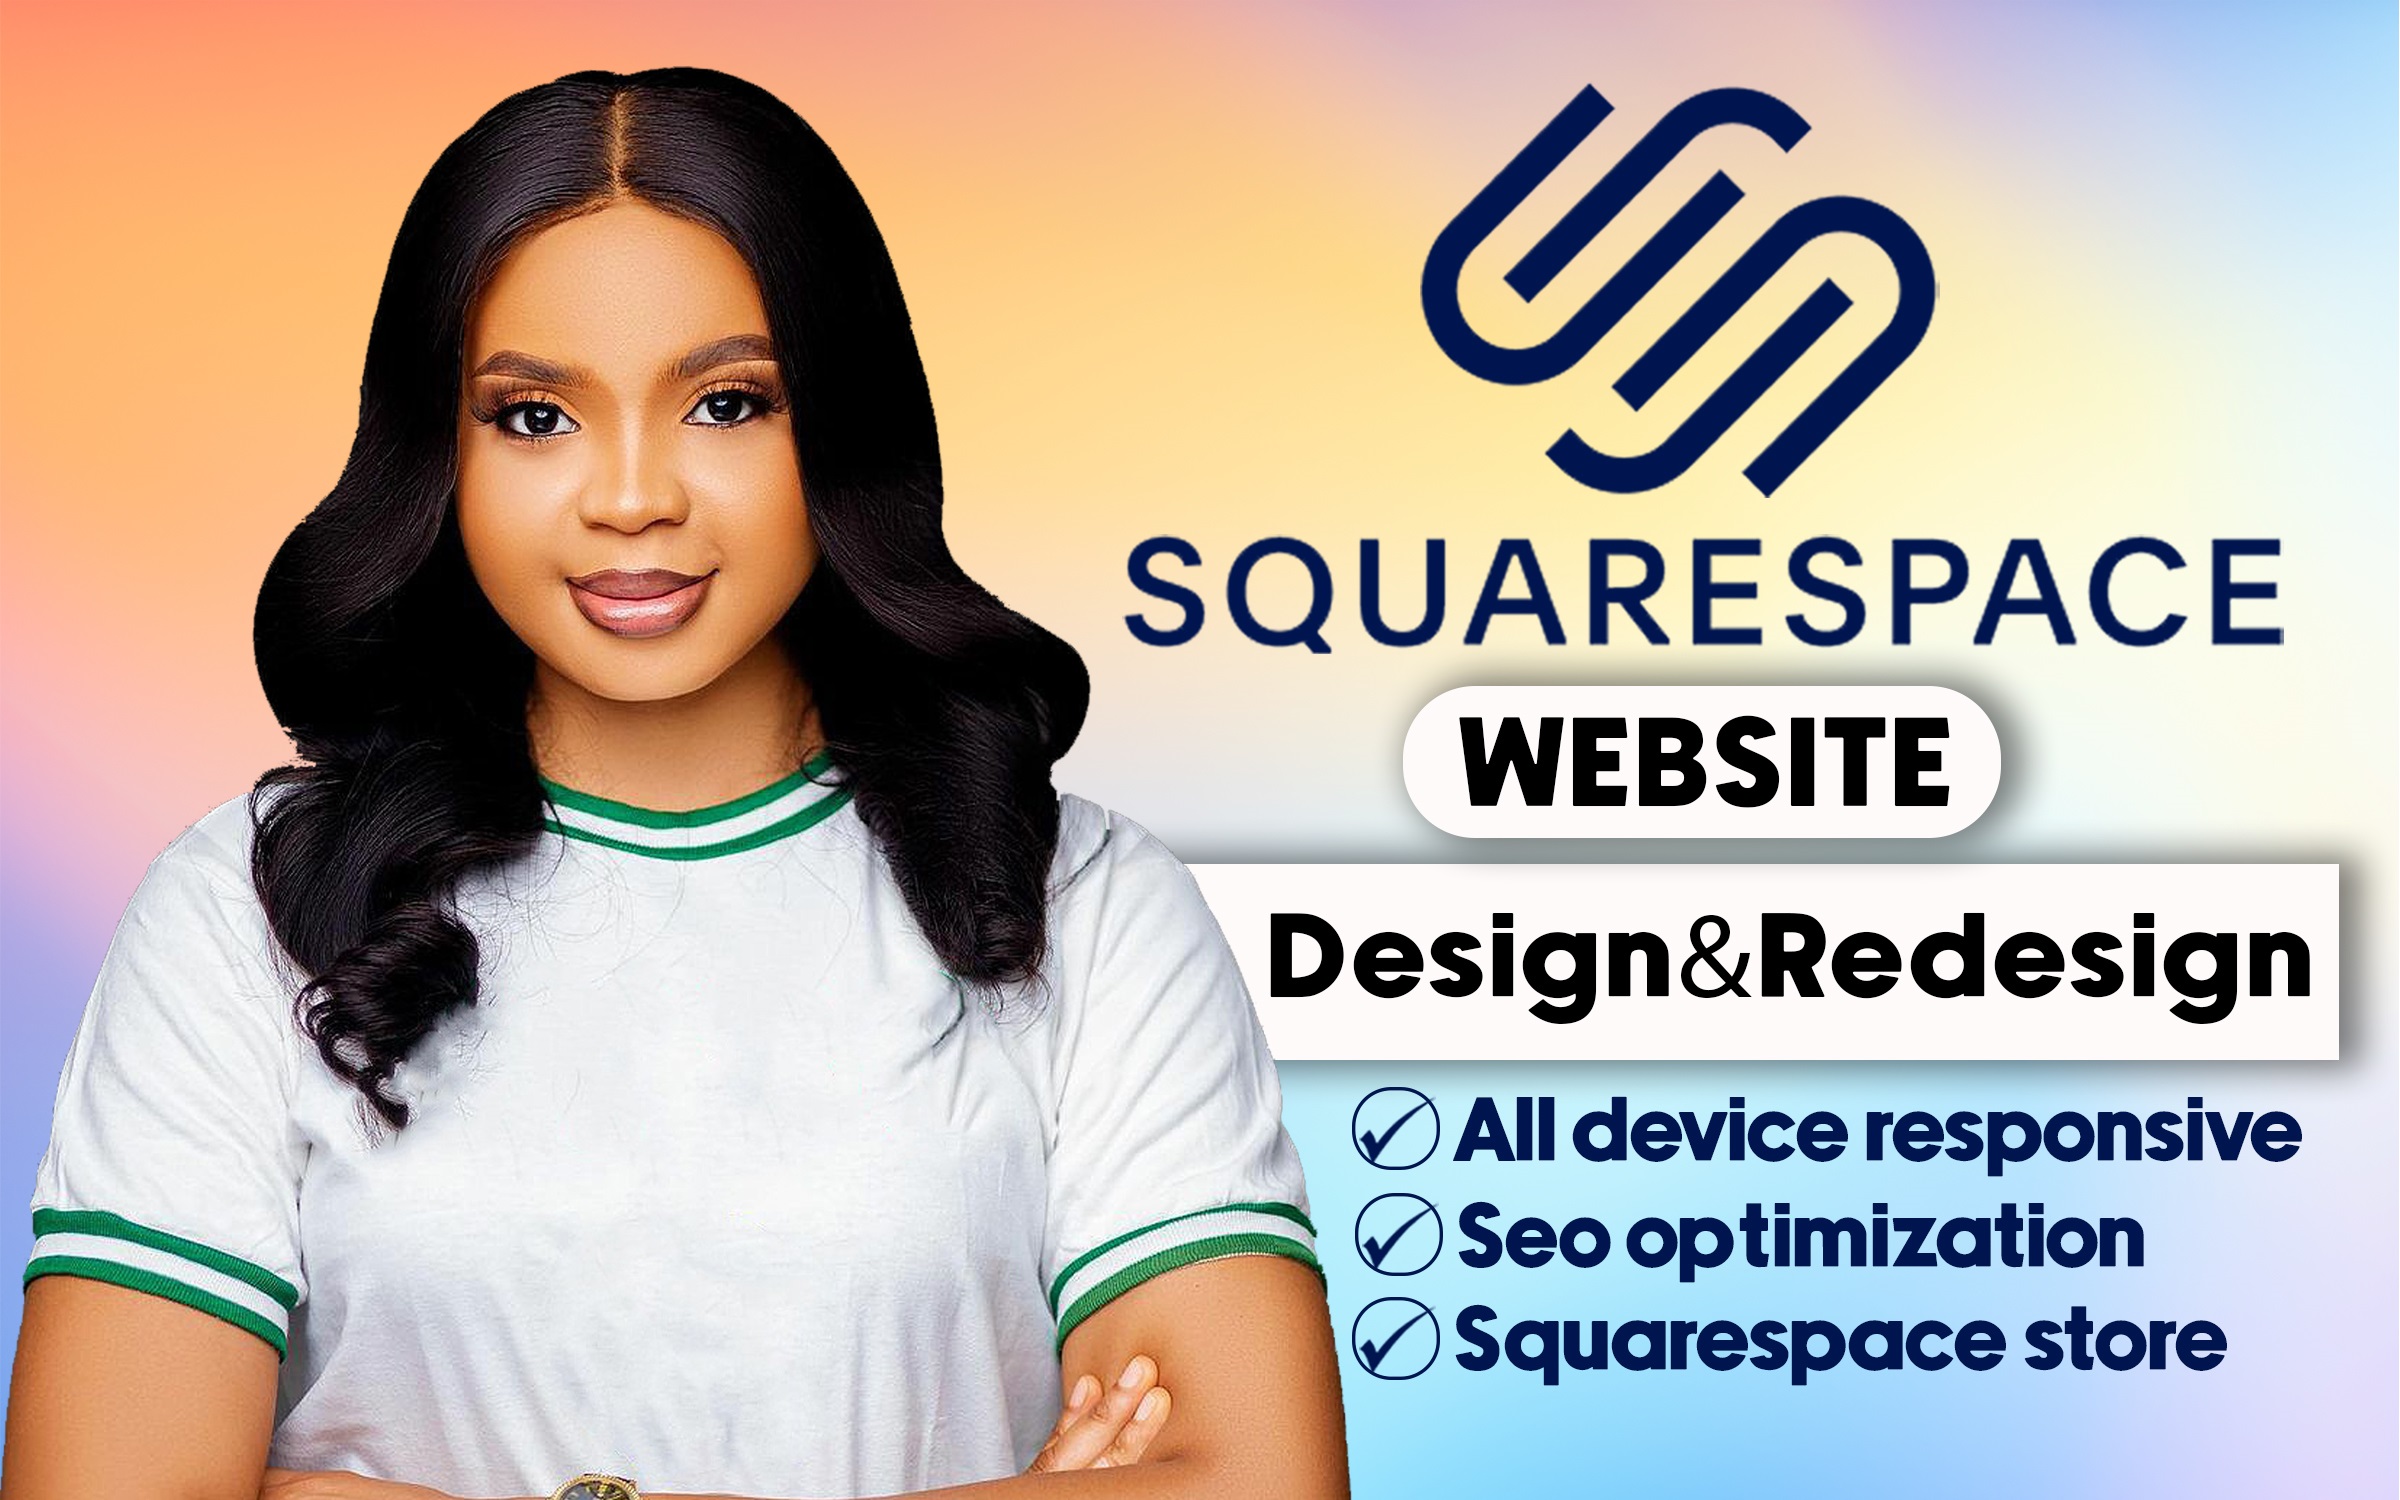 I will squarespace website design squarespace website redesign squarespace website seo, FiverrBox